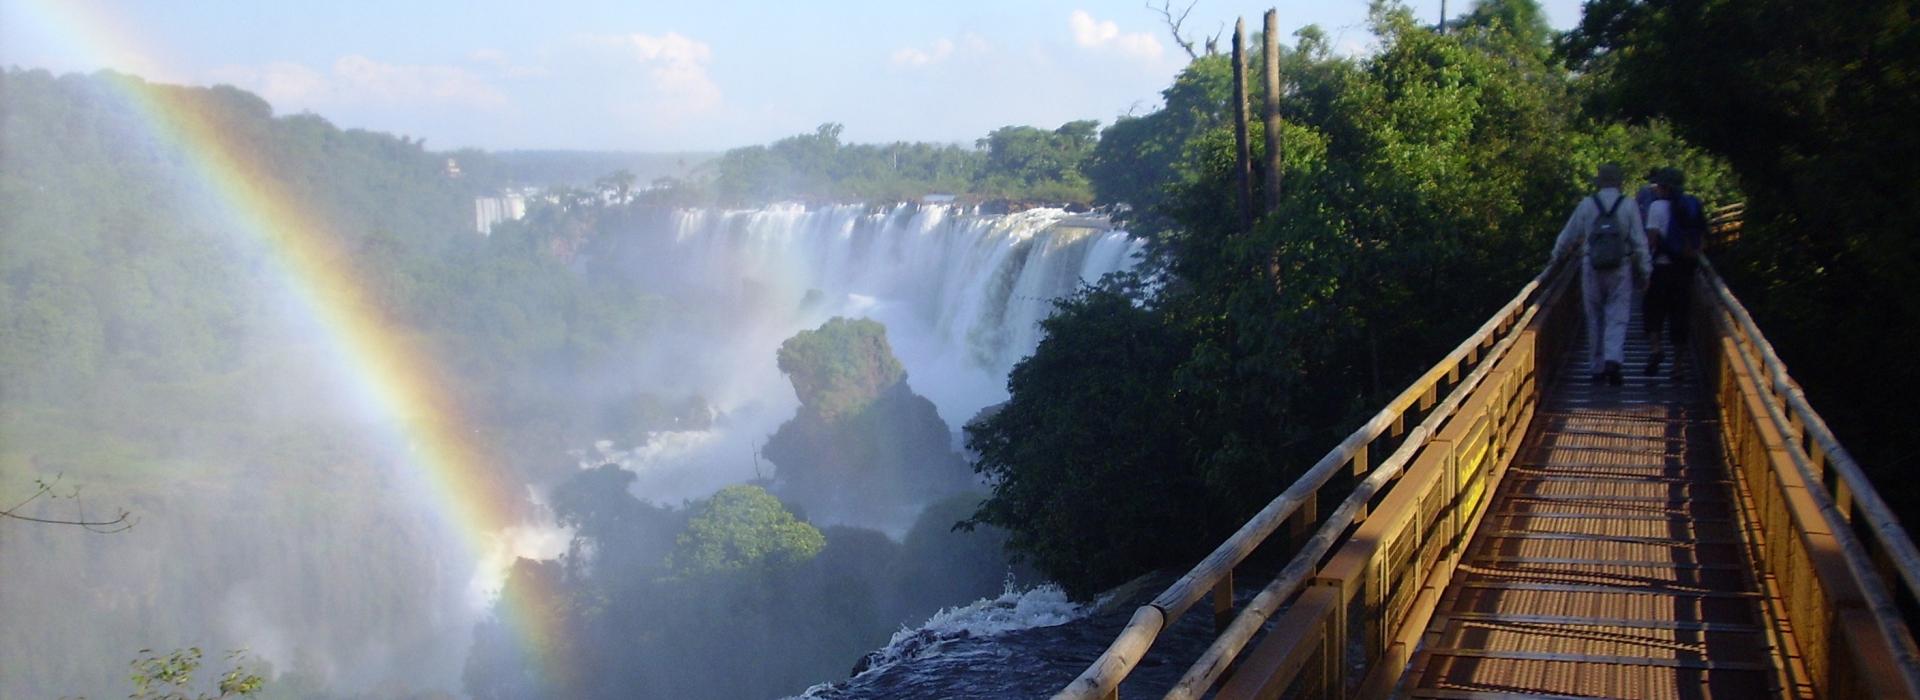 Ibera and Iguazu